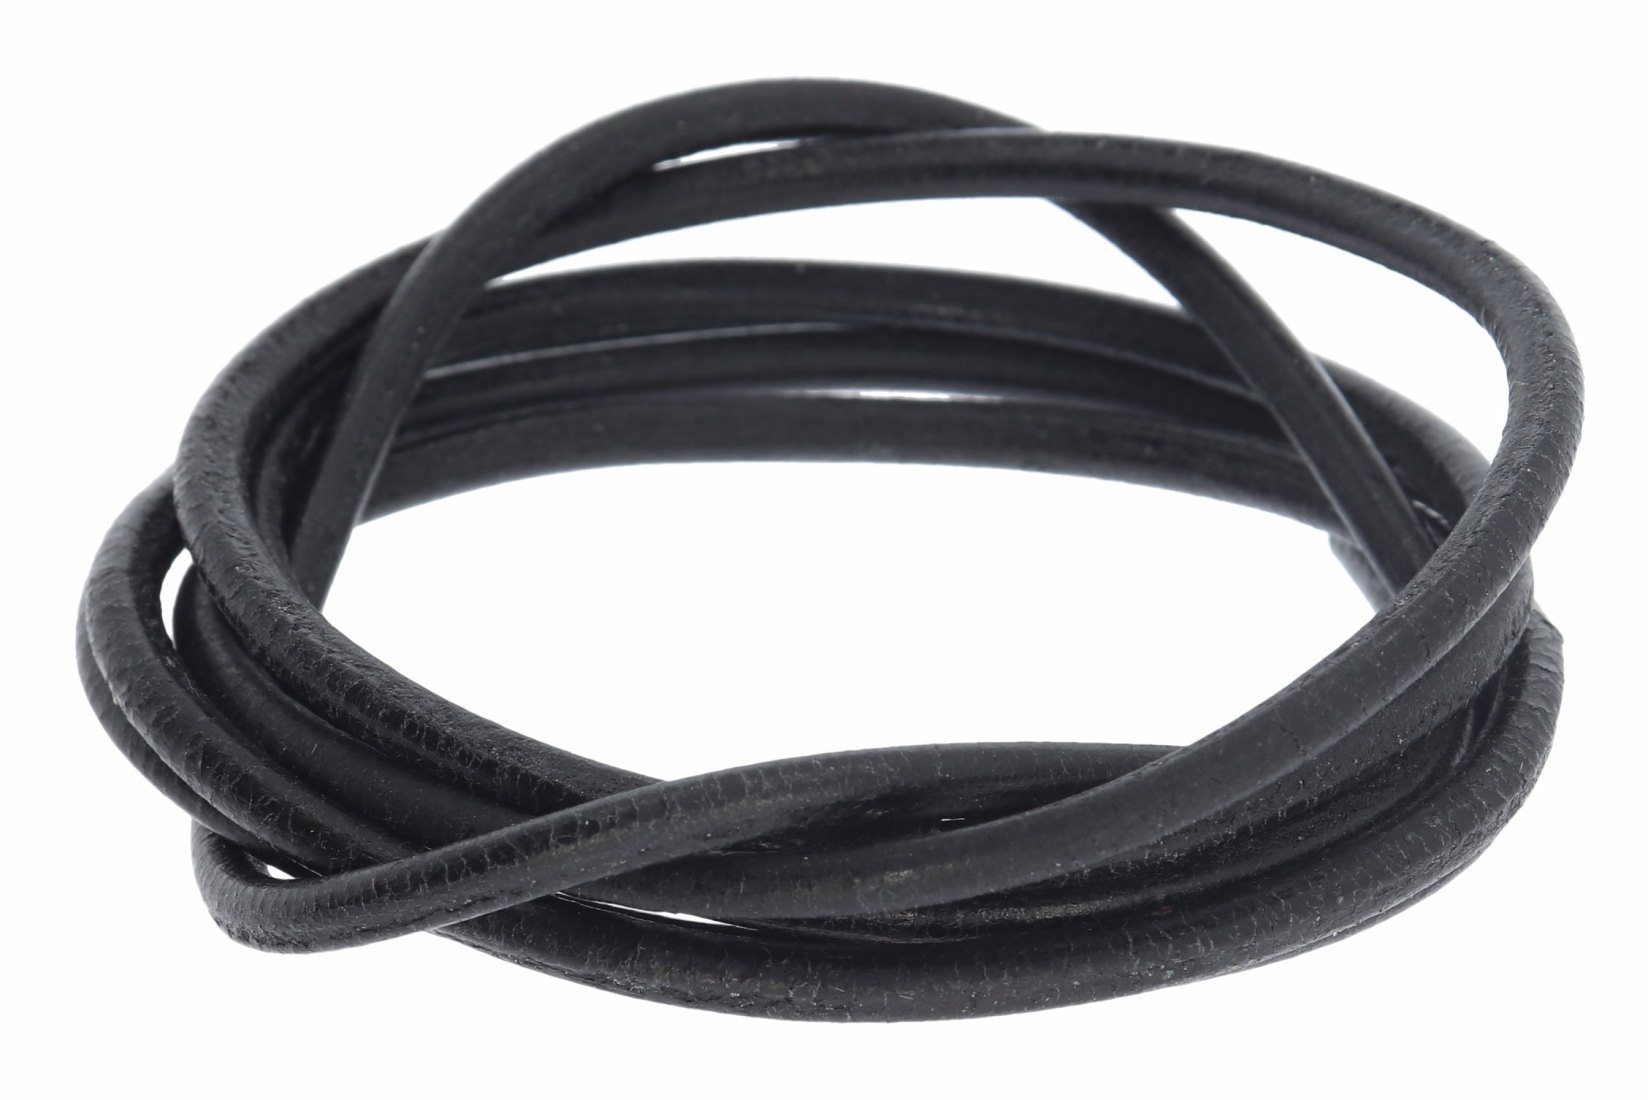 Lederband schwarz -  Lederbänder Lederriemen Lederschnur 3 mm Ø - 100cm